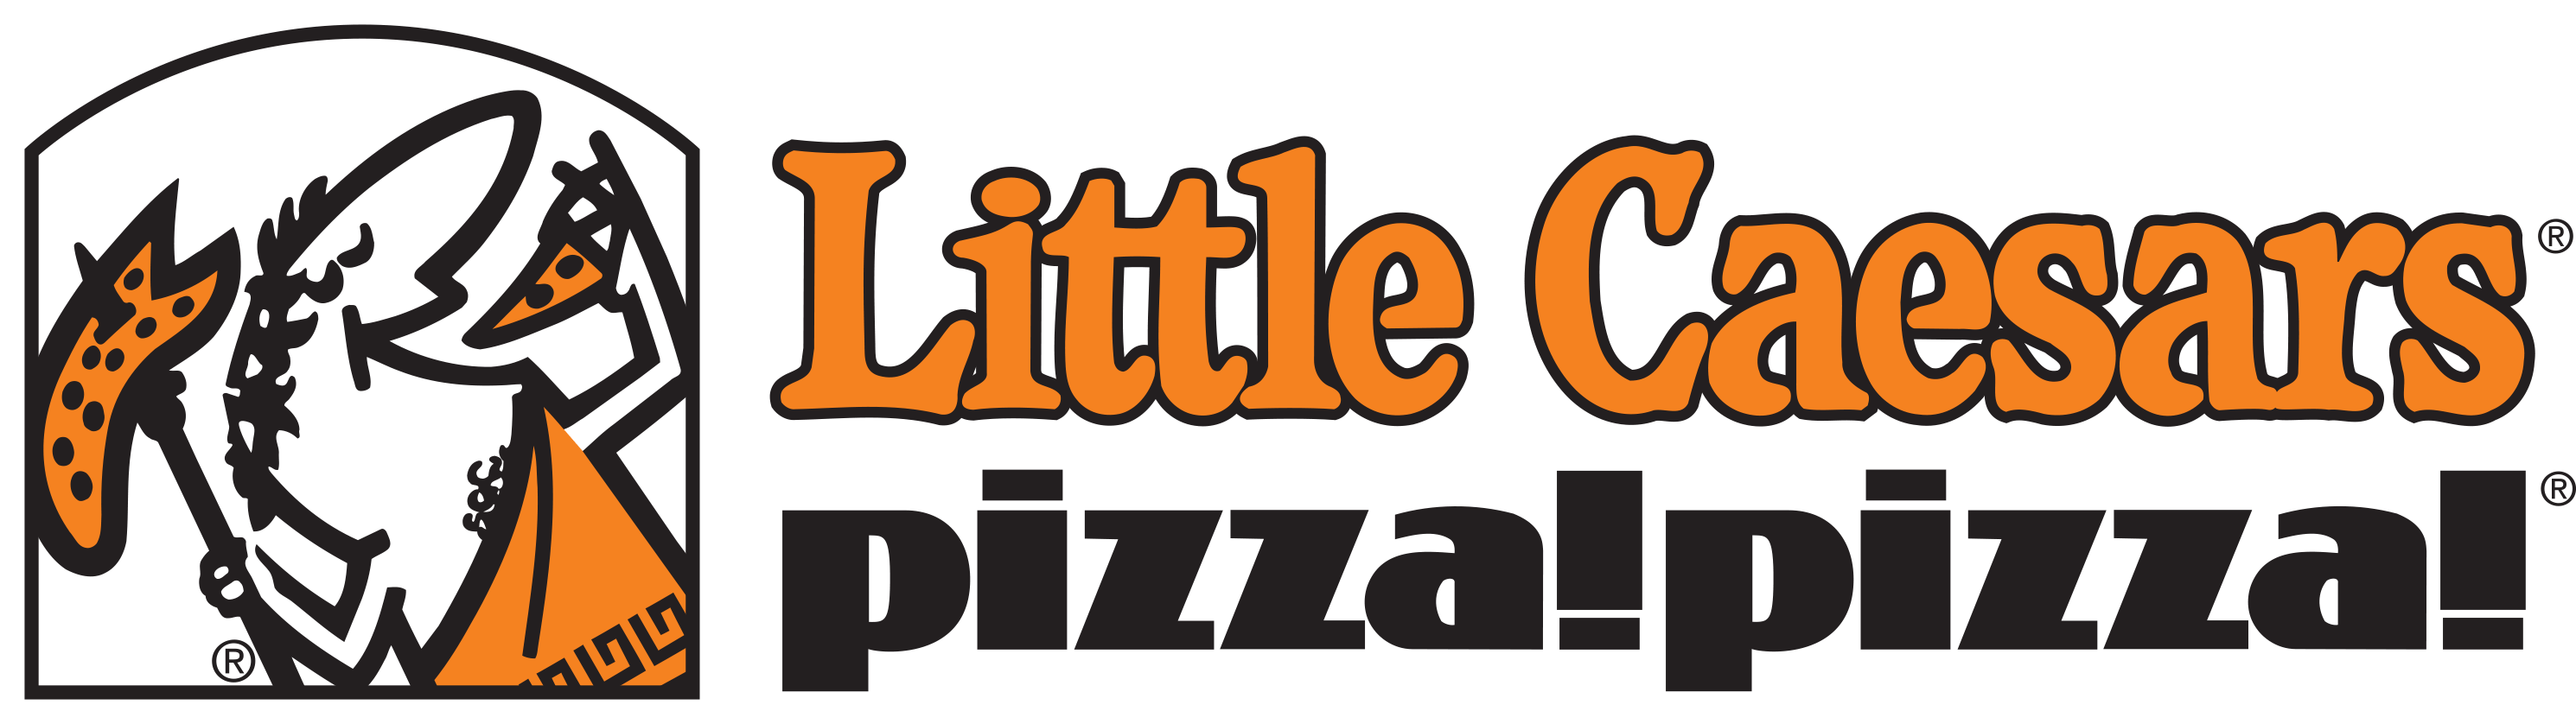 Little Caesars Pizza Logo - Little caesars pizza Logos